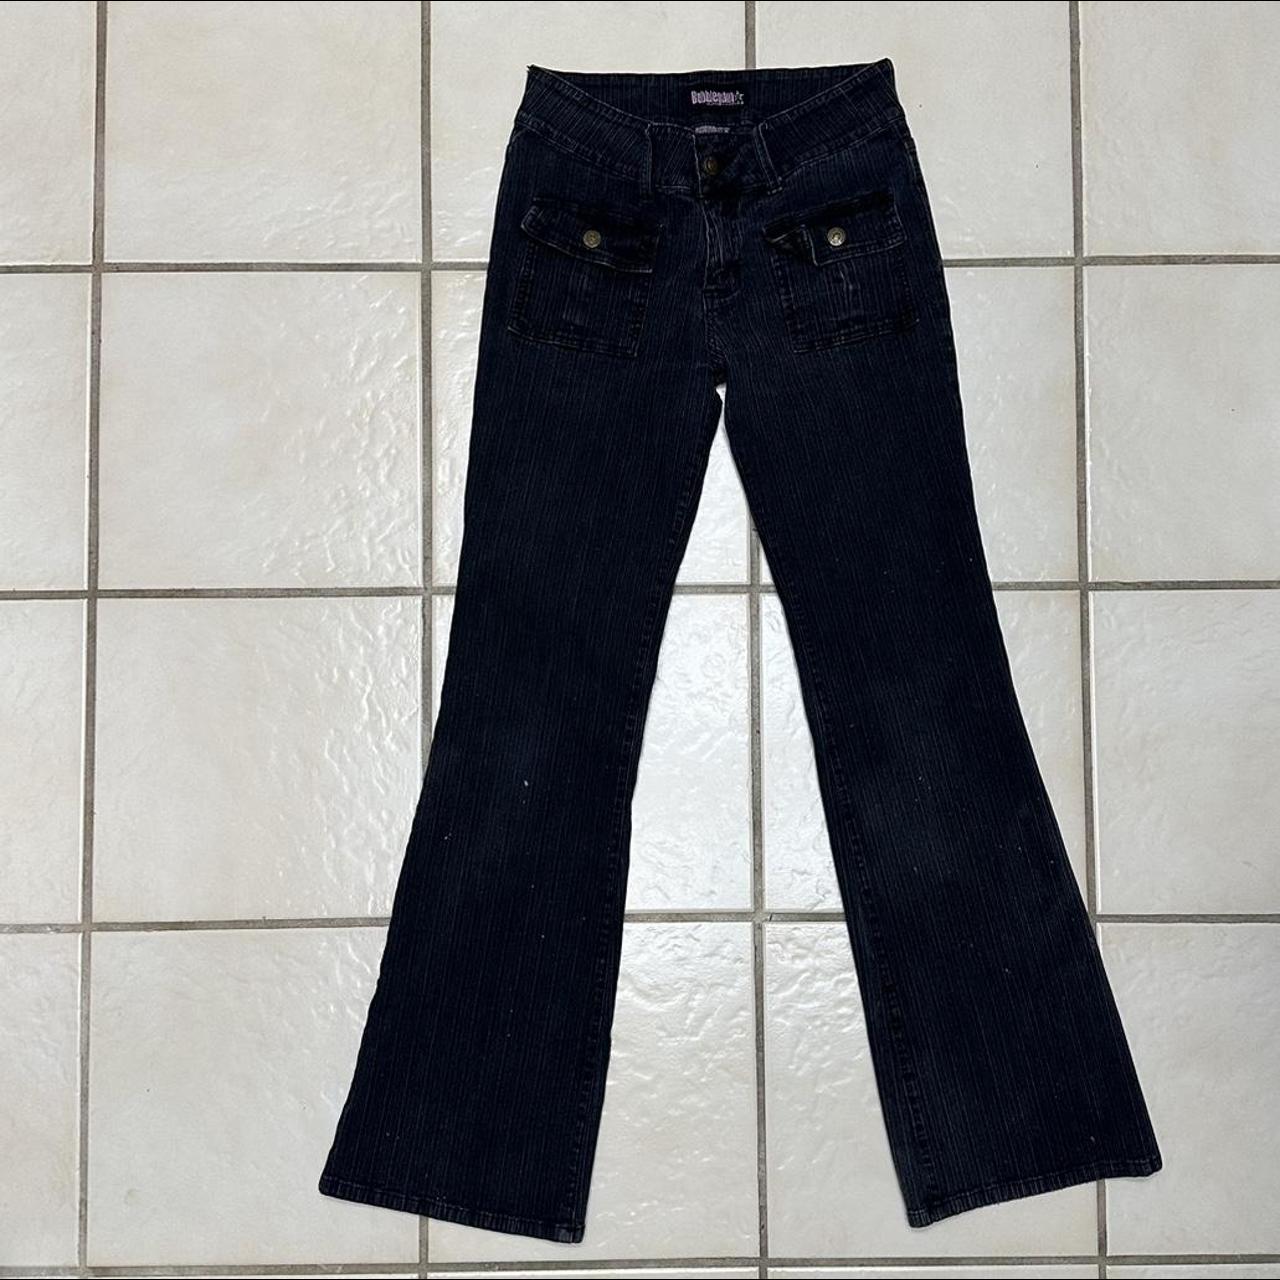 Vintage Bubblegum low rise jeans Y2K cargo front... - Depop